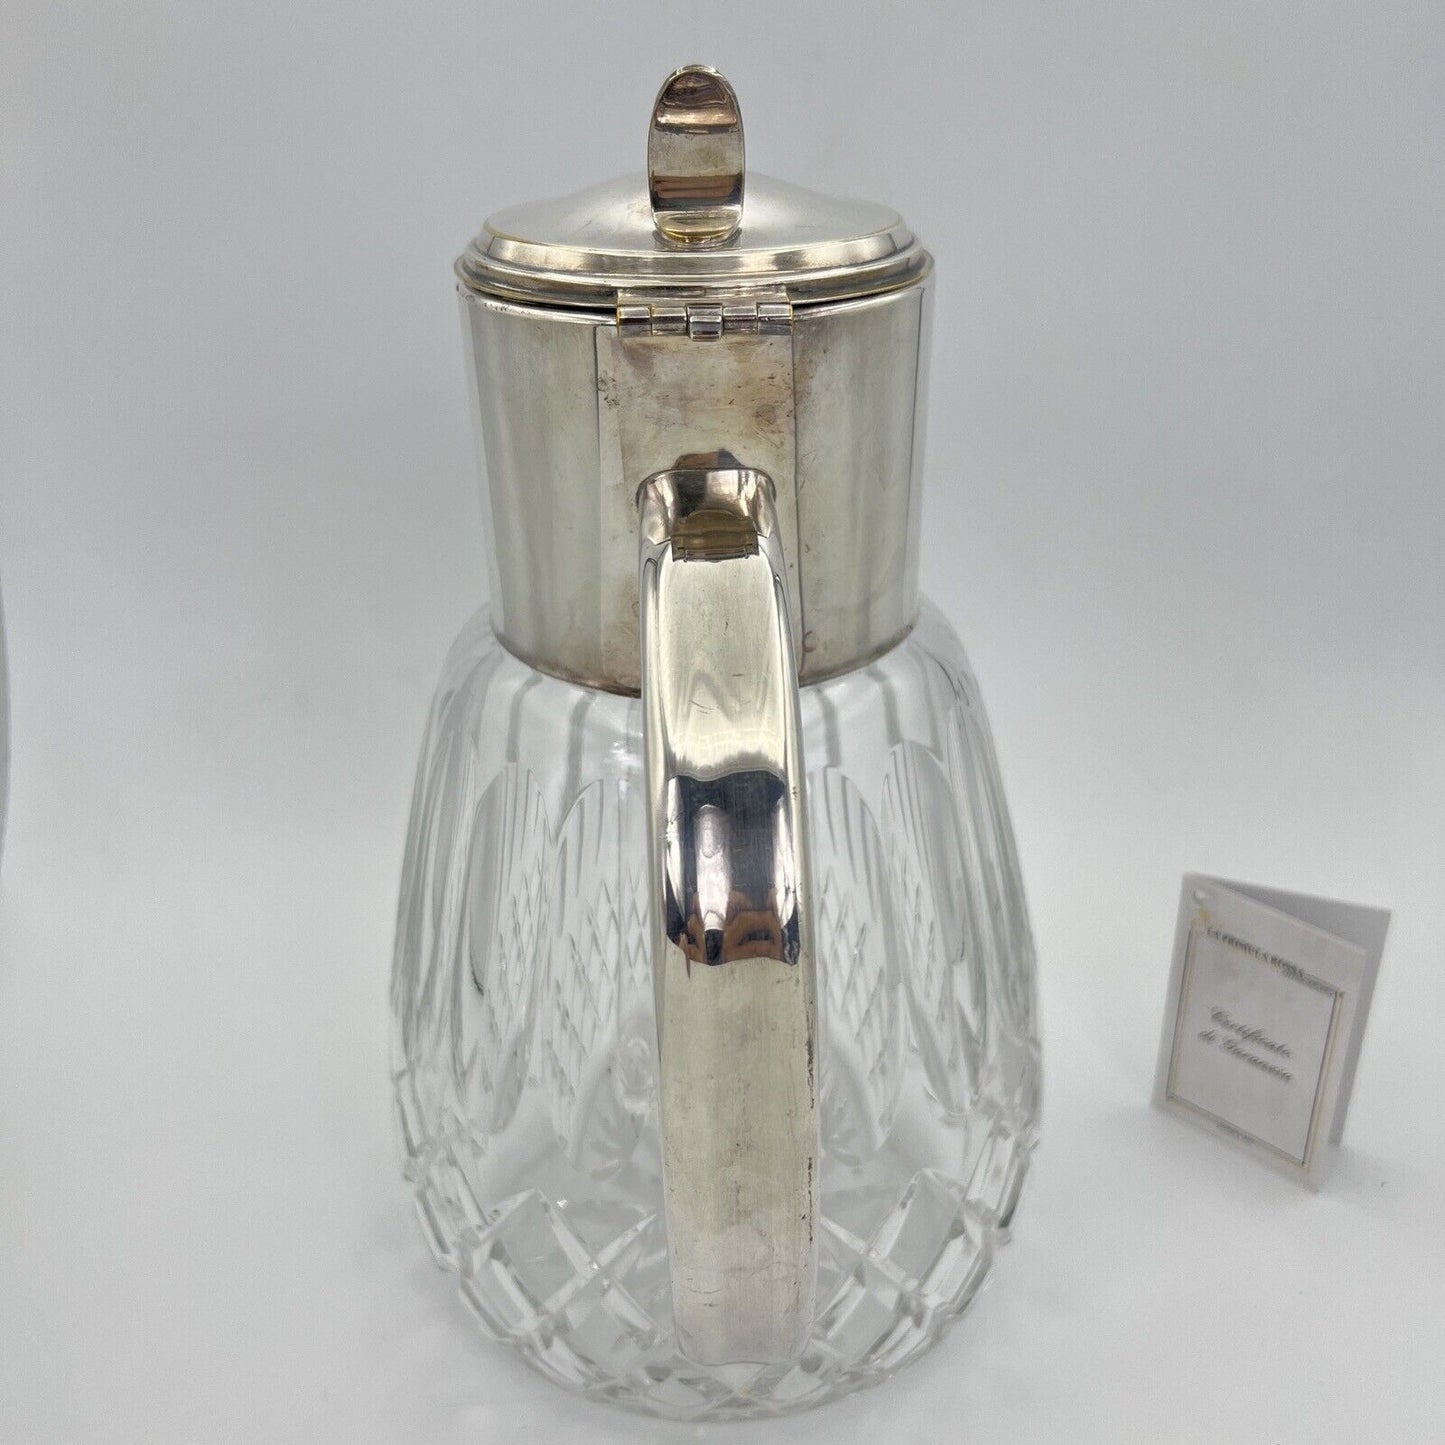 Brocca caraffa antica in cristallo argento silver plated decanter porta ghiaccio